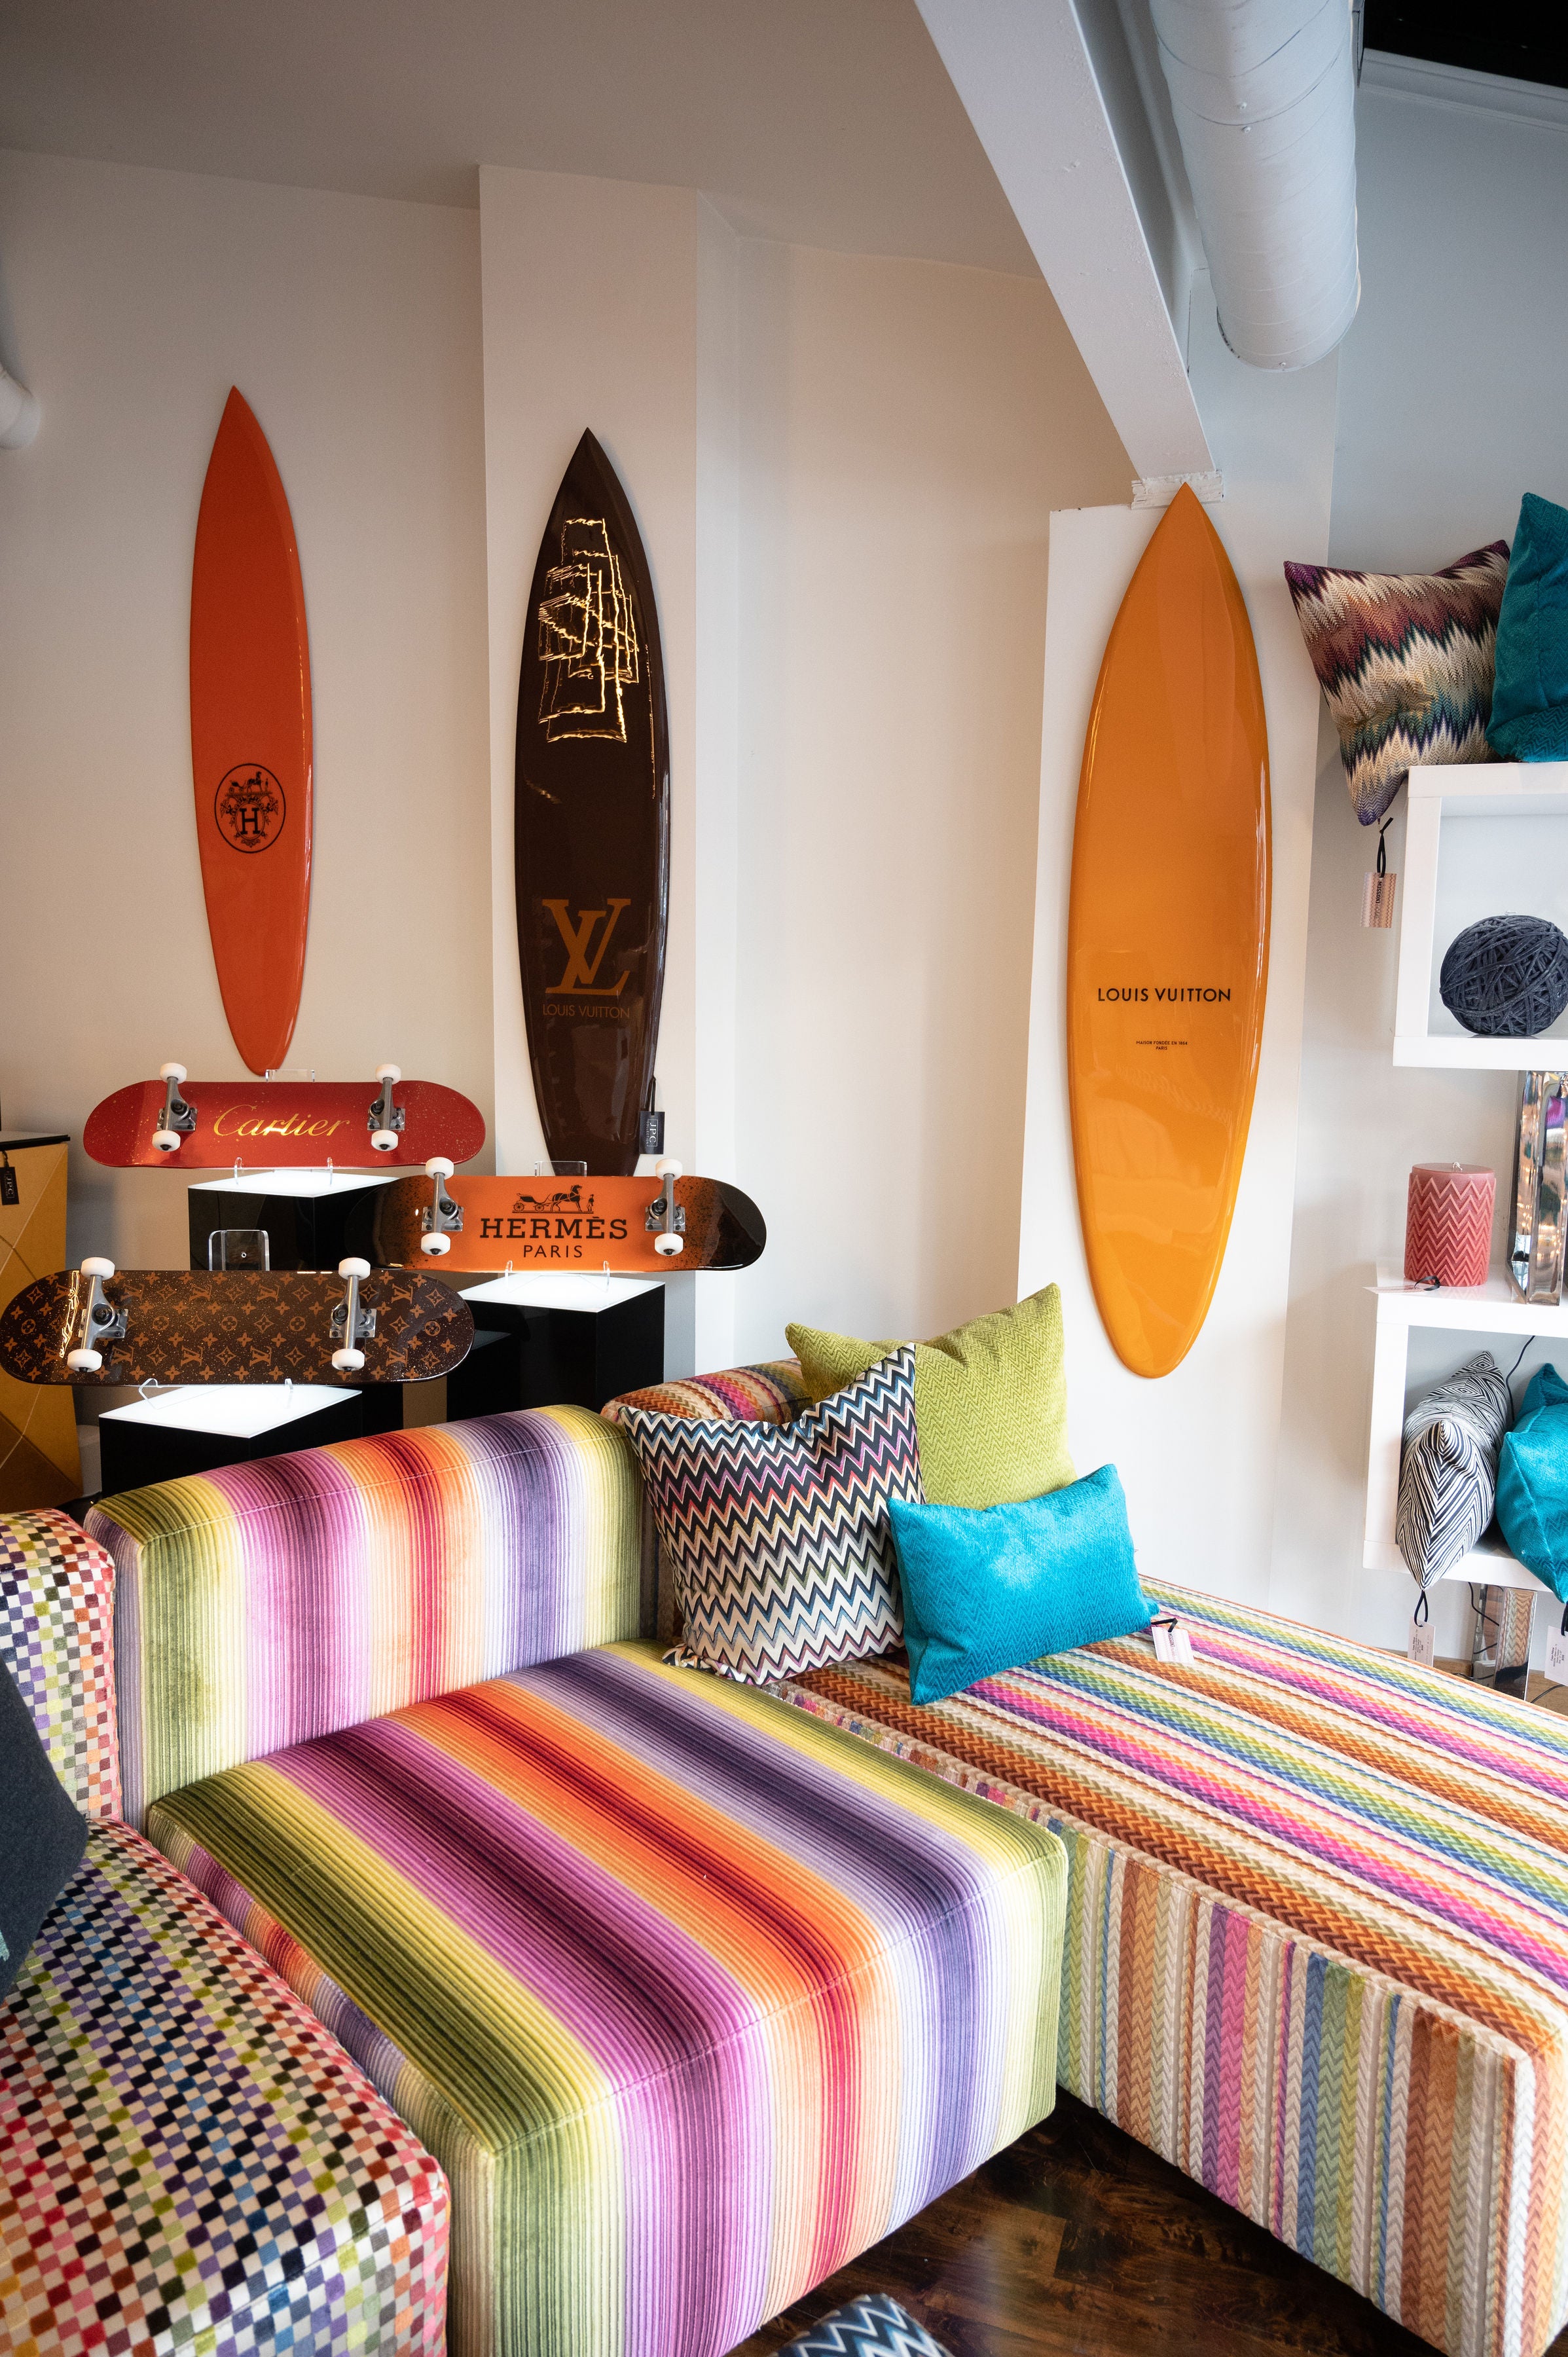 Louis Vuitton Surfboard